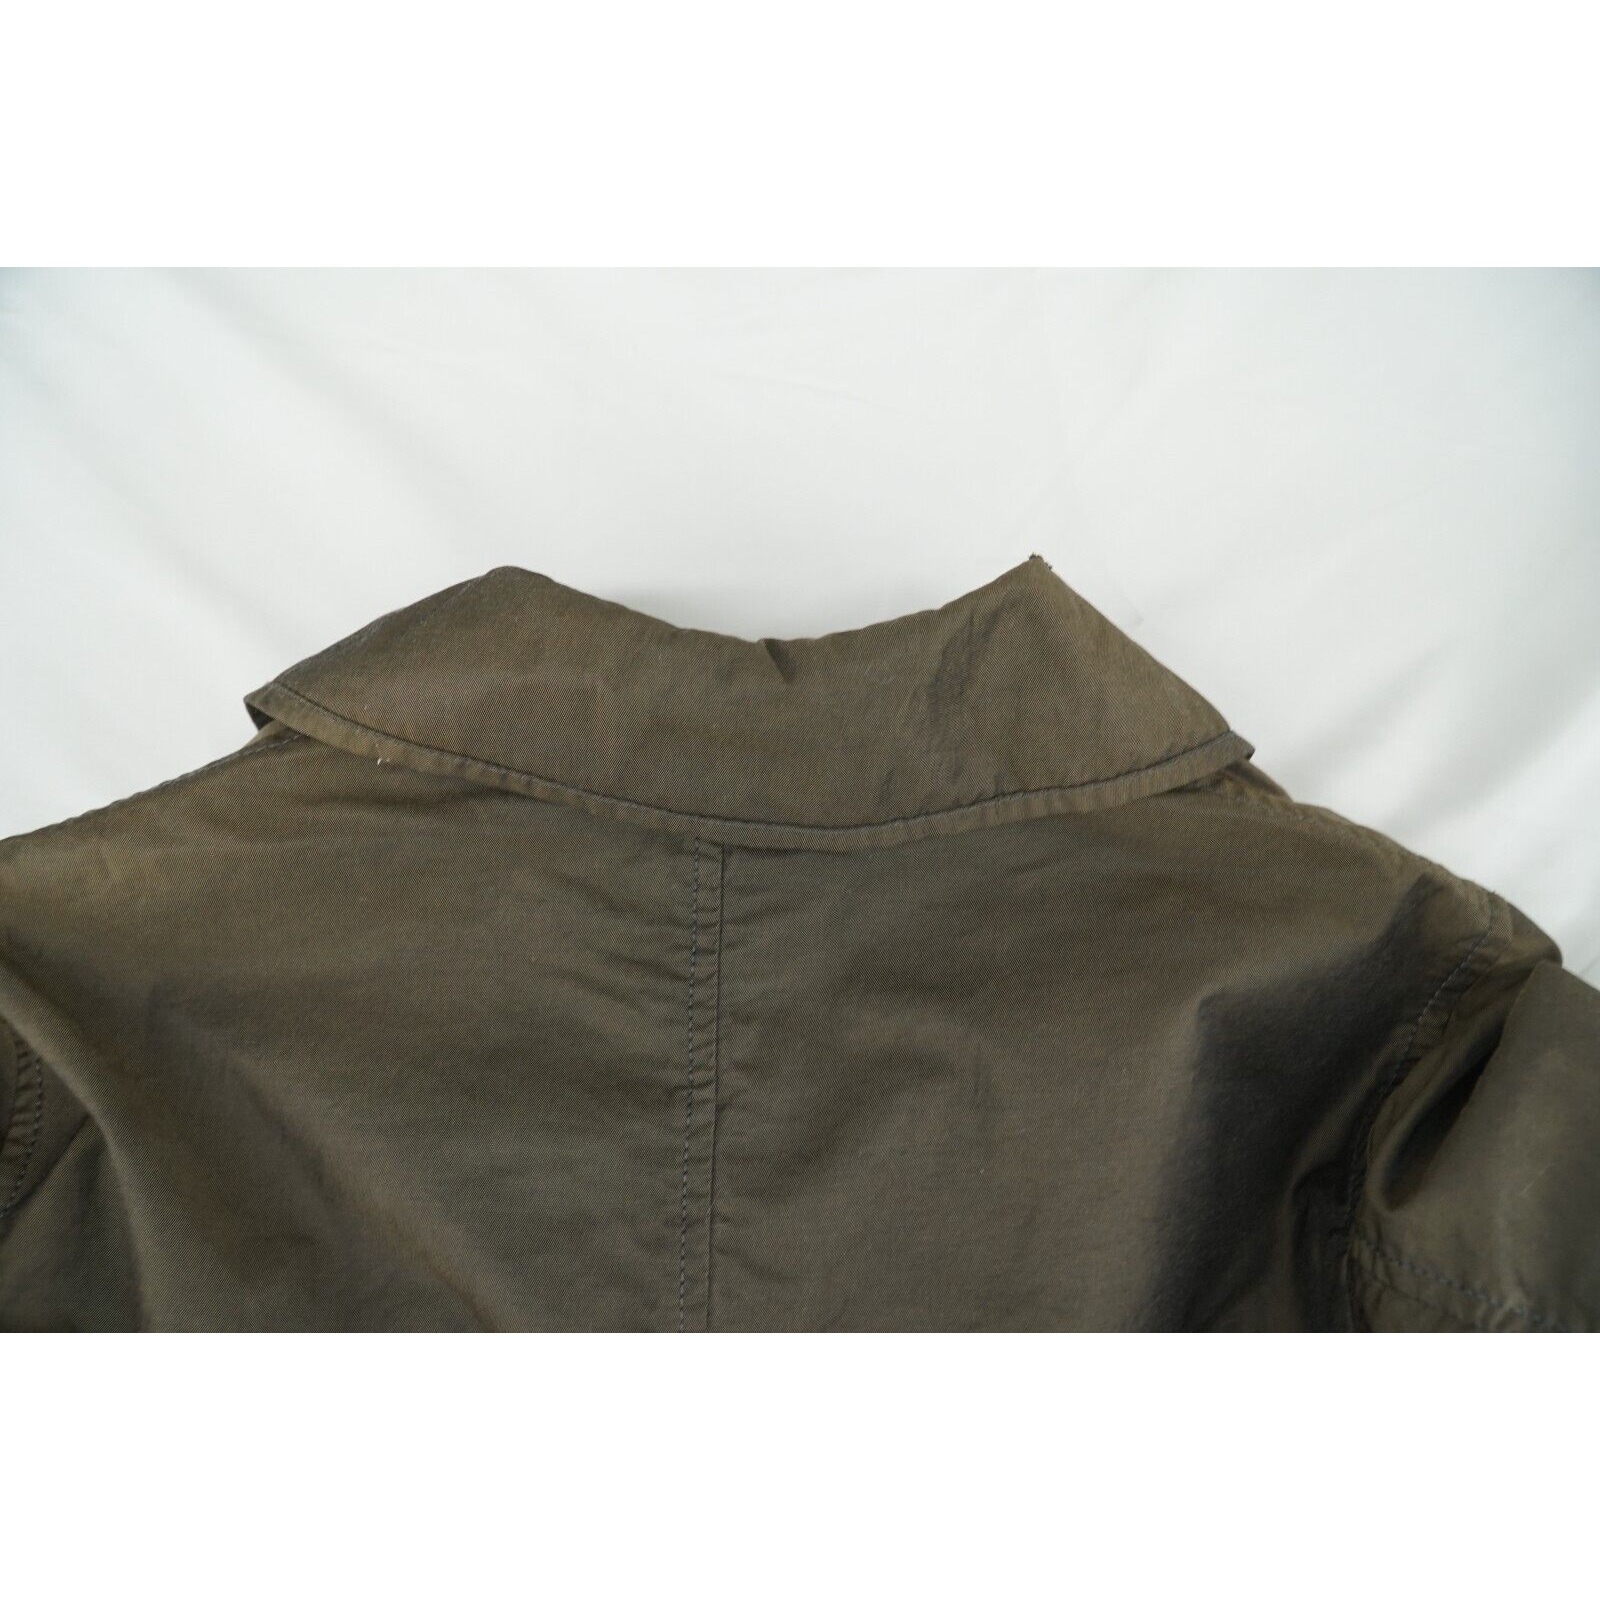 Lanvin Trench Coat Brown Iridescent - Sz 50 - 24